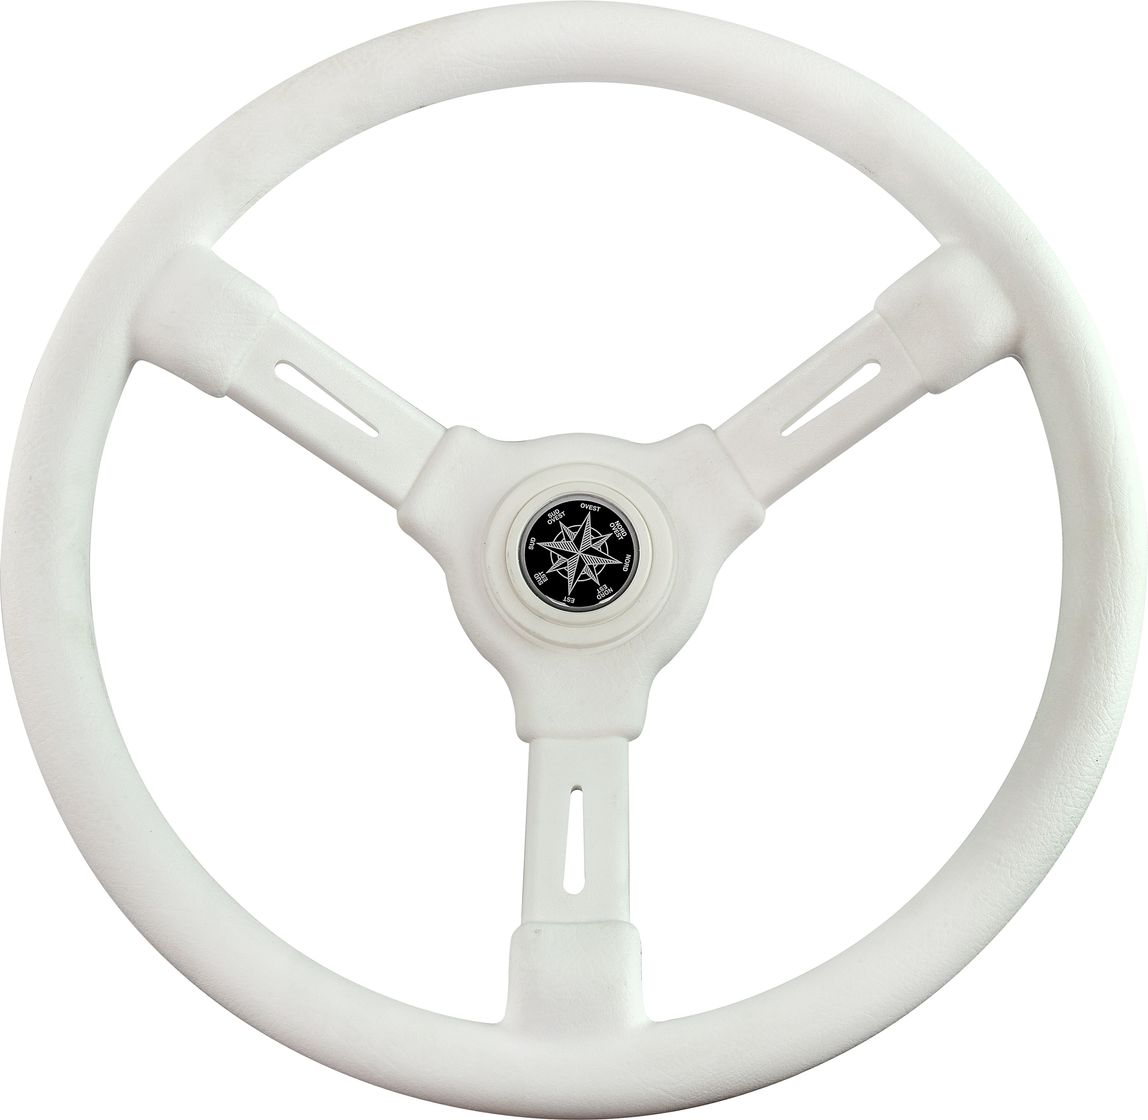 Рулевое колесо RIVIERA белый обод и спицы д. 350 мм VN8001-08 рулевое колесо versilia more 10016456